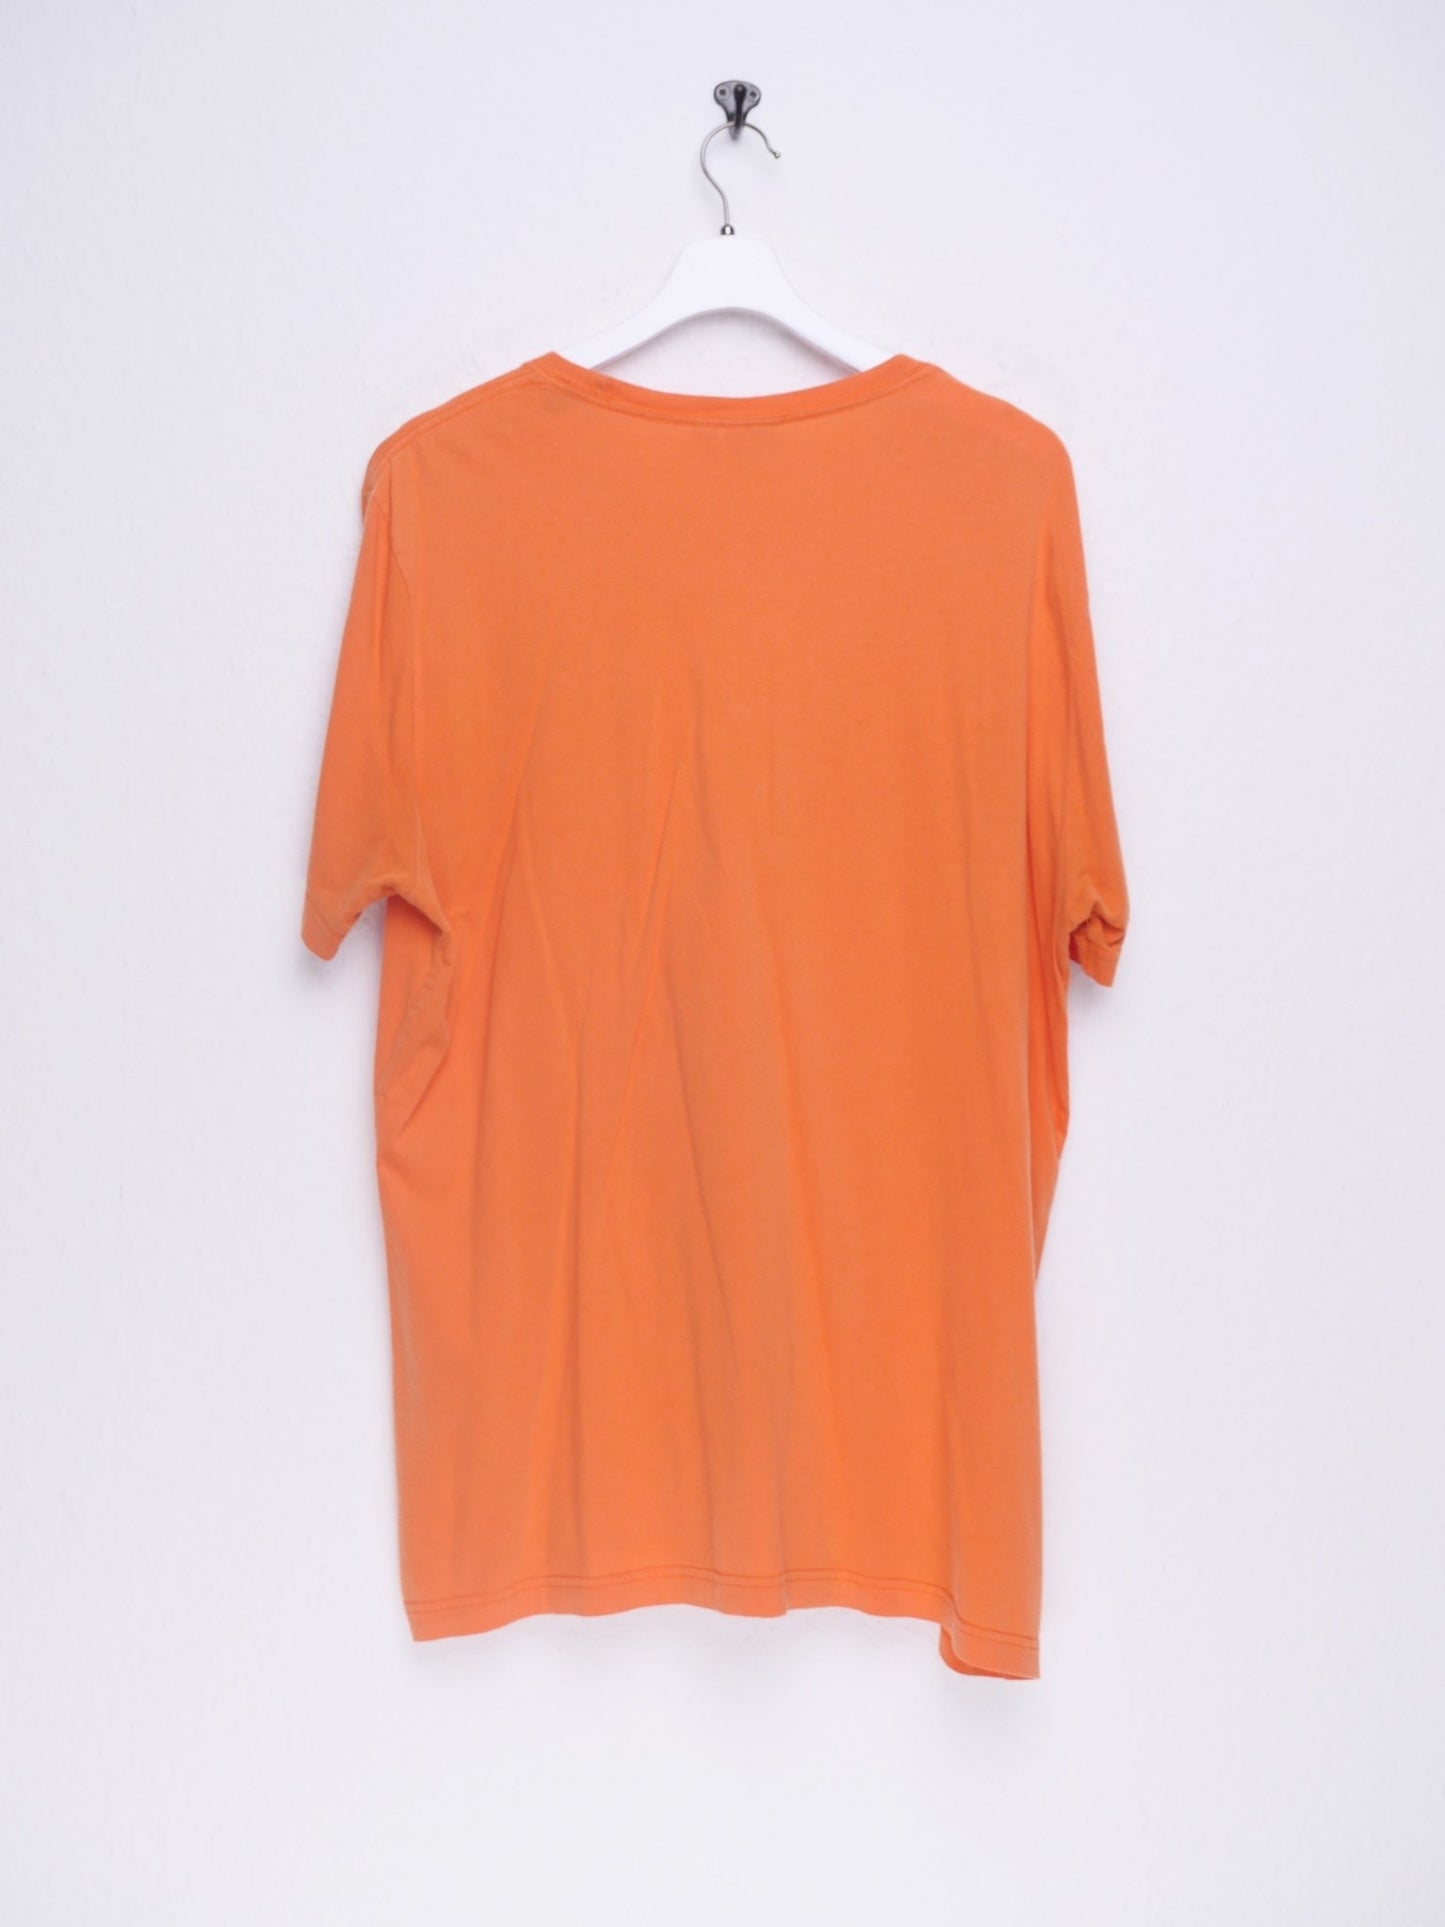 puma printed Logo orange Shirt - Peeces